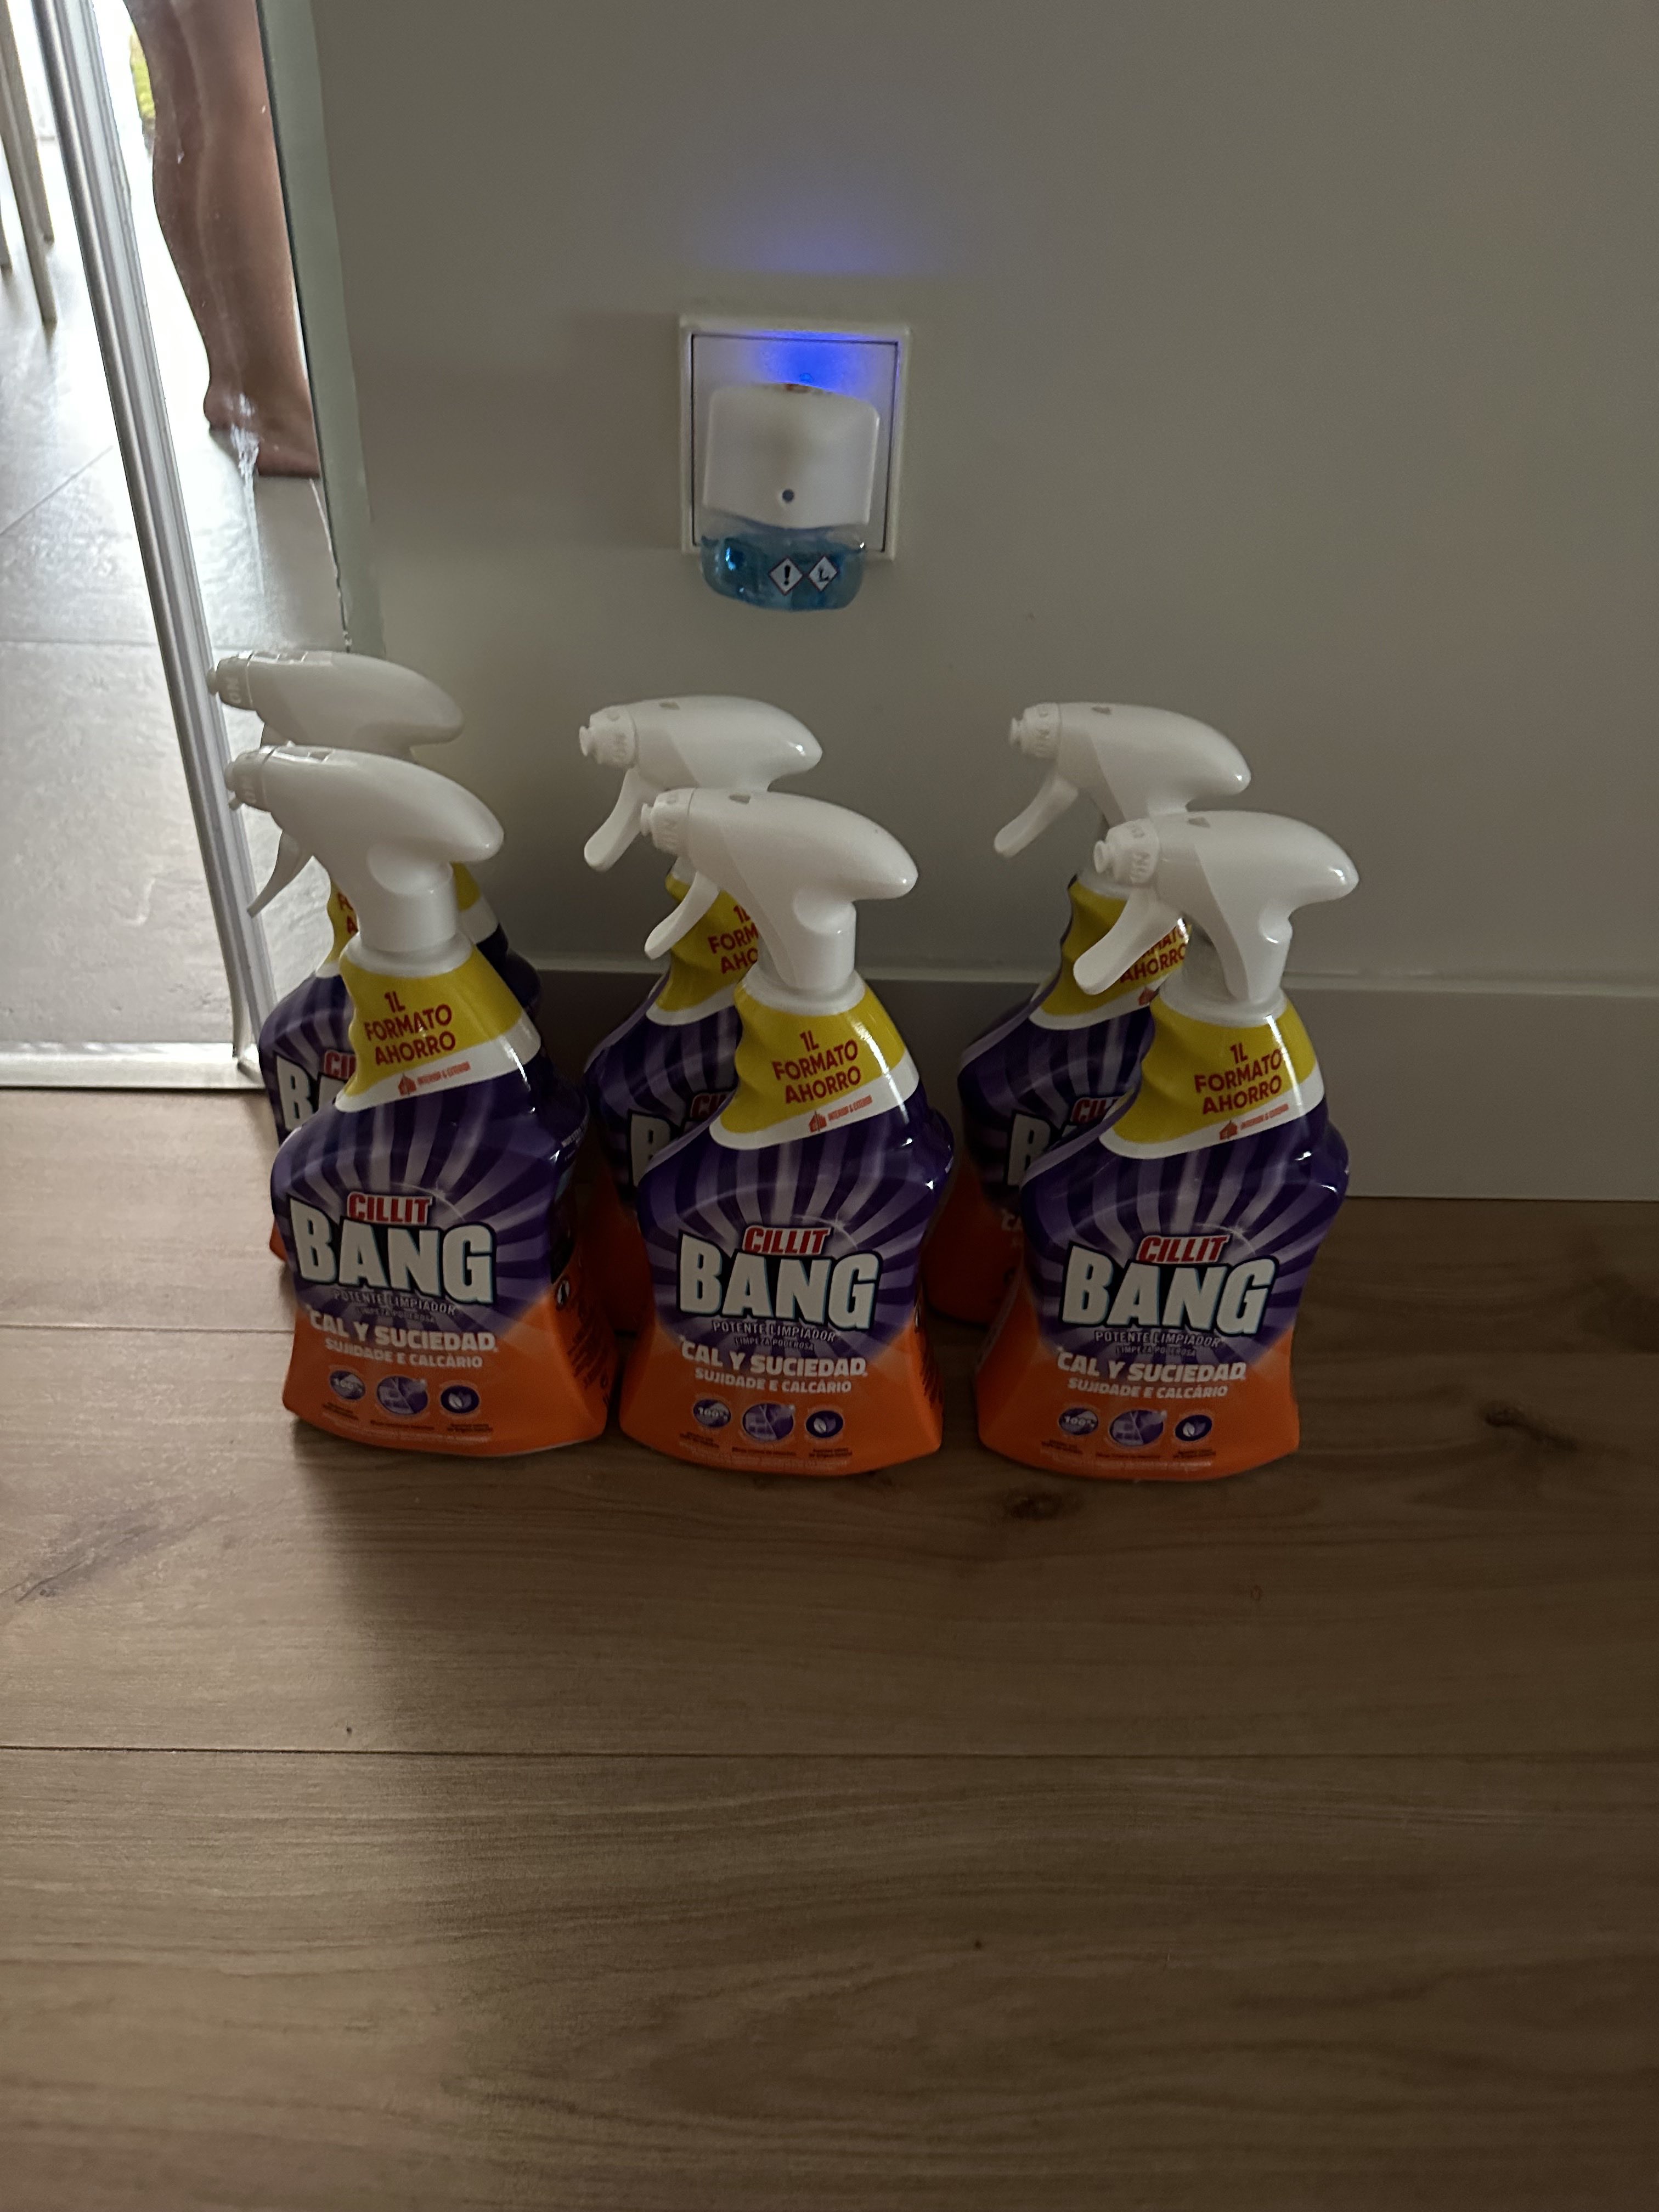 Cillit Bang - Pack 2 sprays Cal y Suciedad 1L + 2 sprays Suciedad y humedad  manchas negras para baño 1L